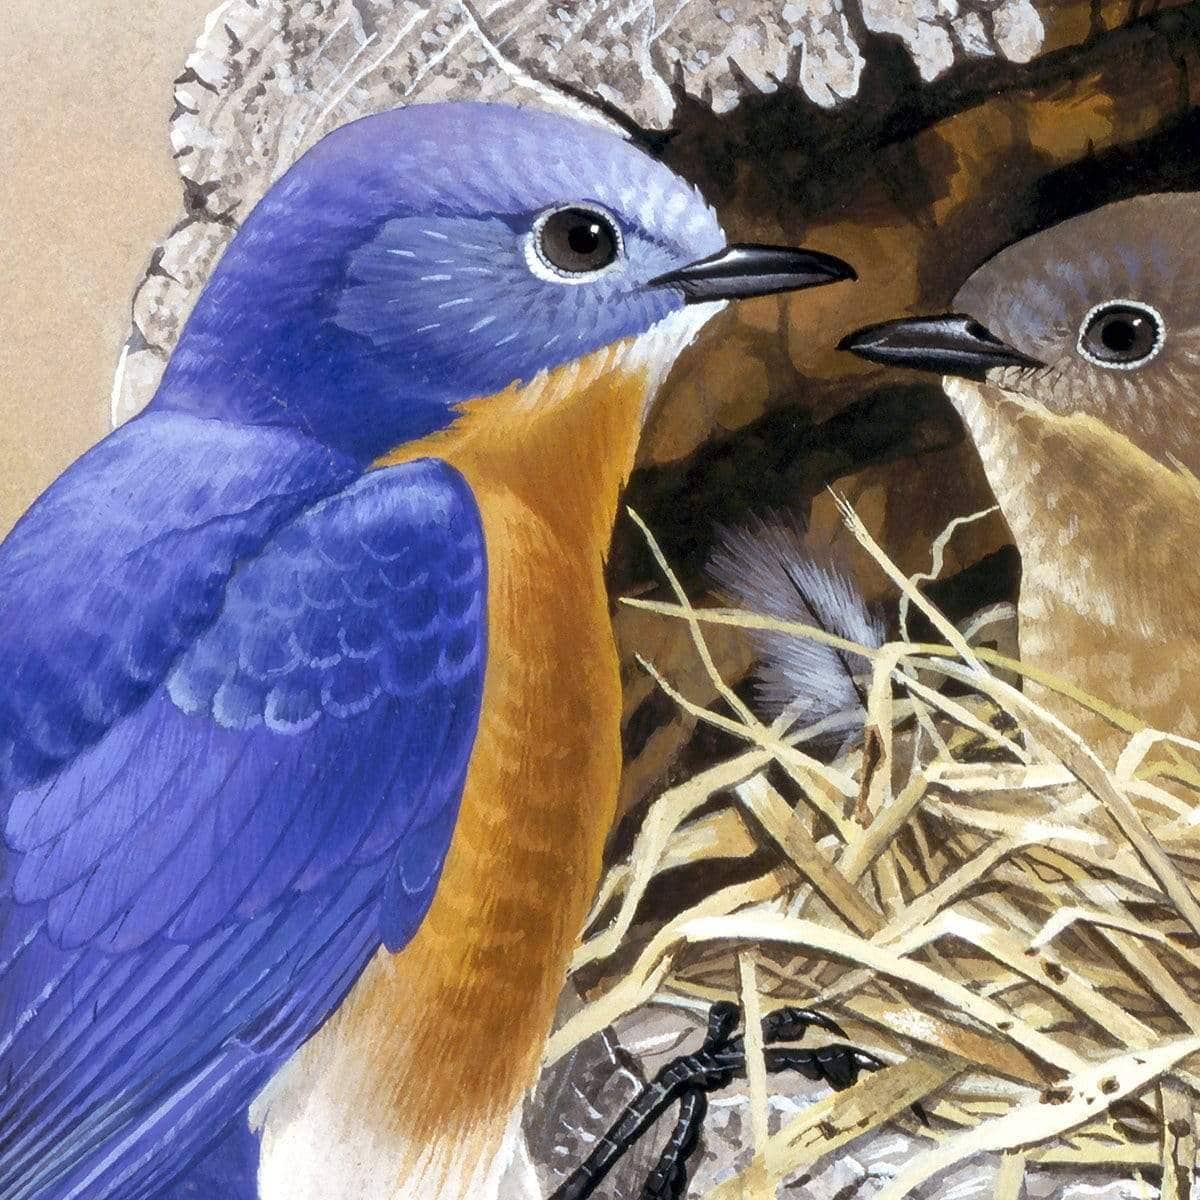 Bluebirds In Nest - Canvas Print | Artwork by Glen Loates